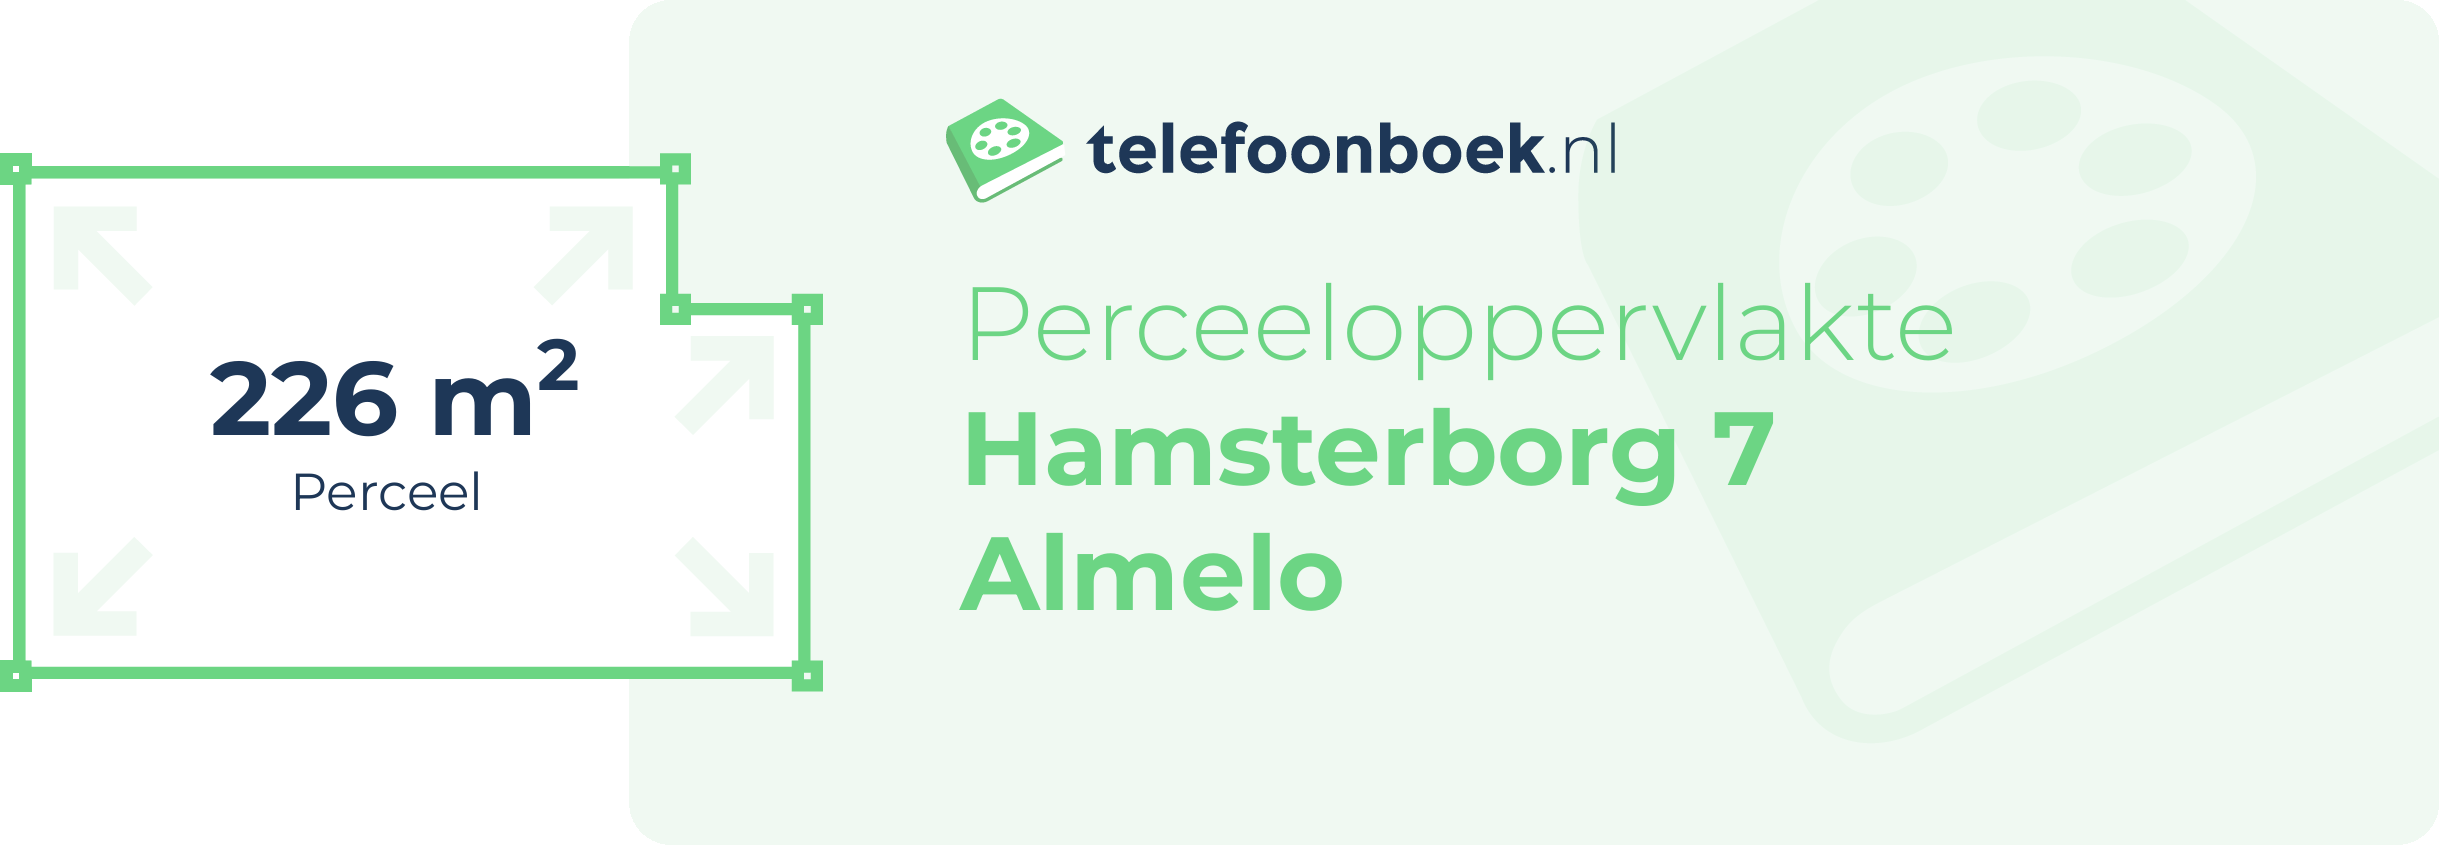 Perceeloppervlakte Hamsterborg 7 Almelo